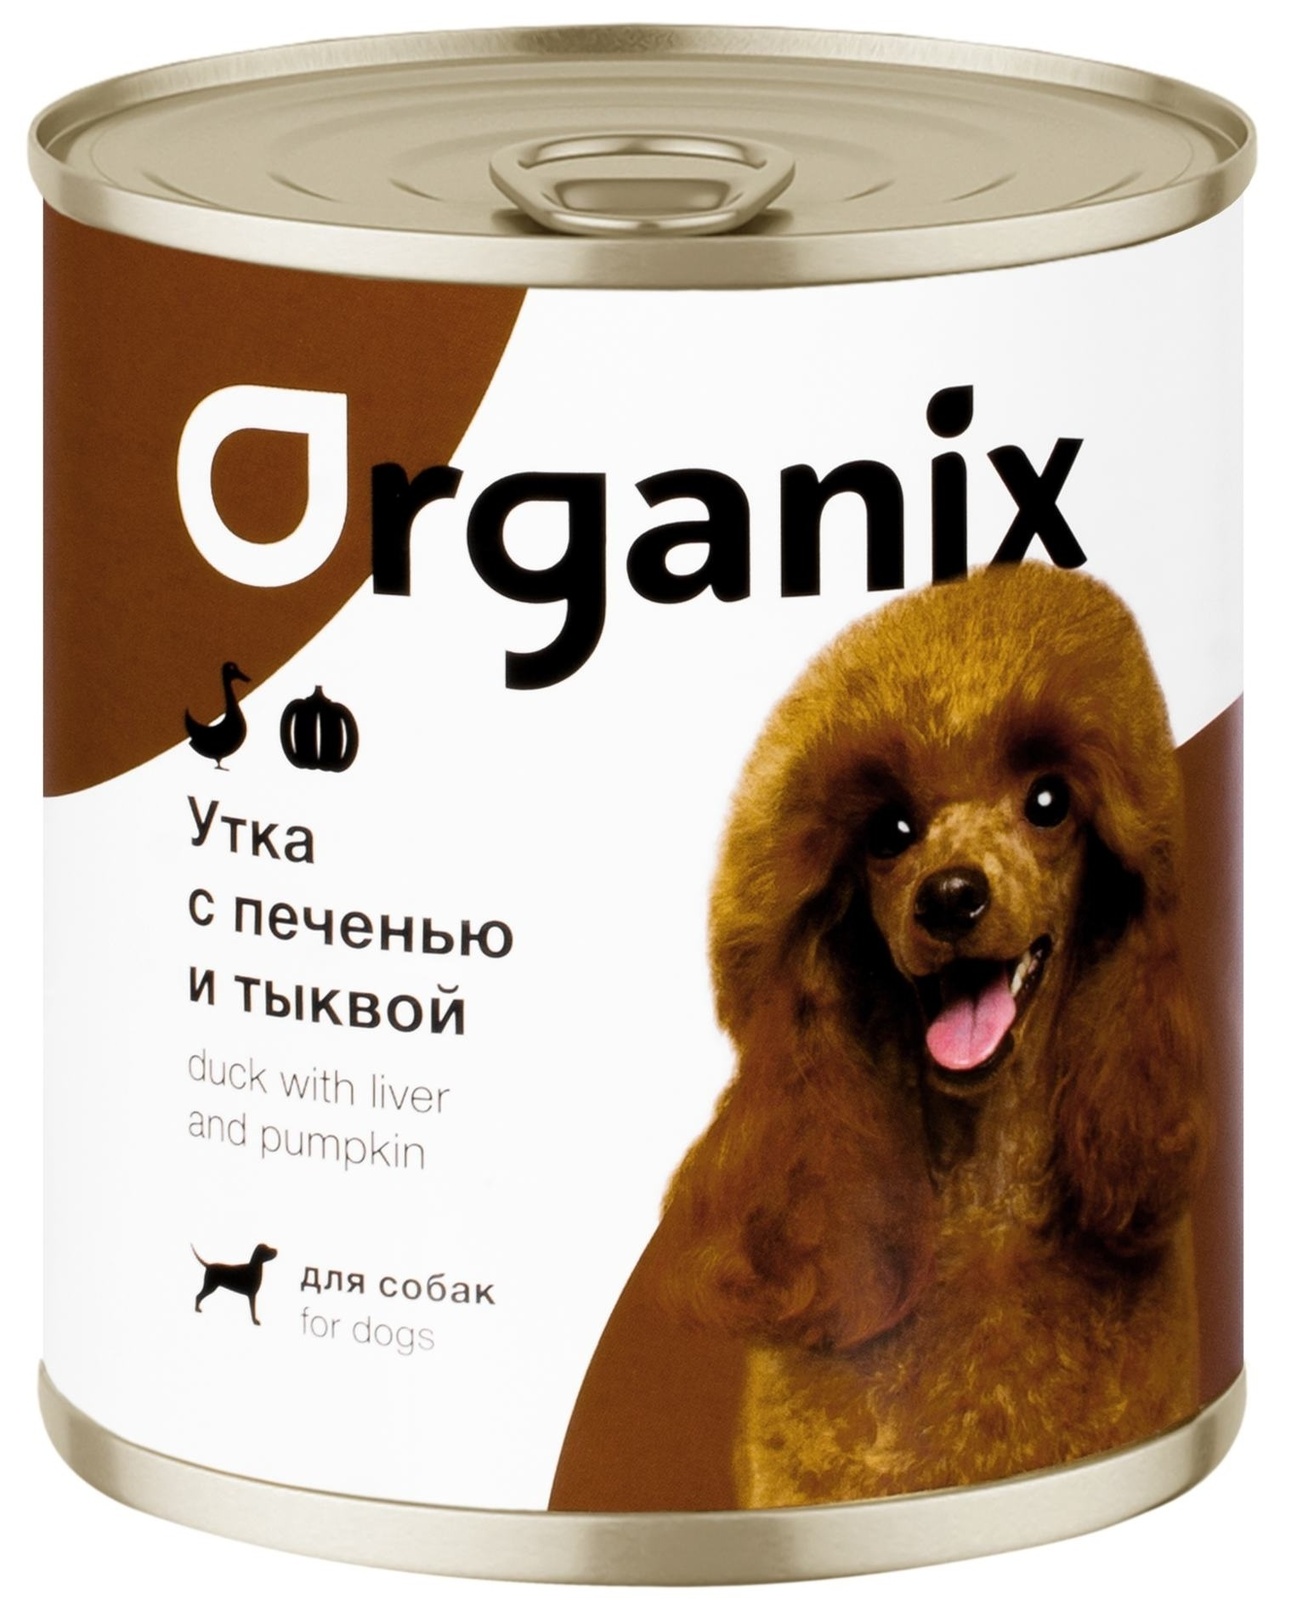 Organix консервы Organix консервы для собак Сочная утка с печенью и тыквой (750 г) organix консервы organix консервы c говядиной и печенью для взрослых собак 750 г